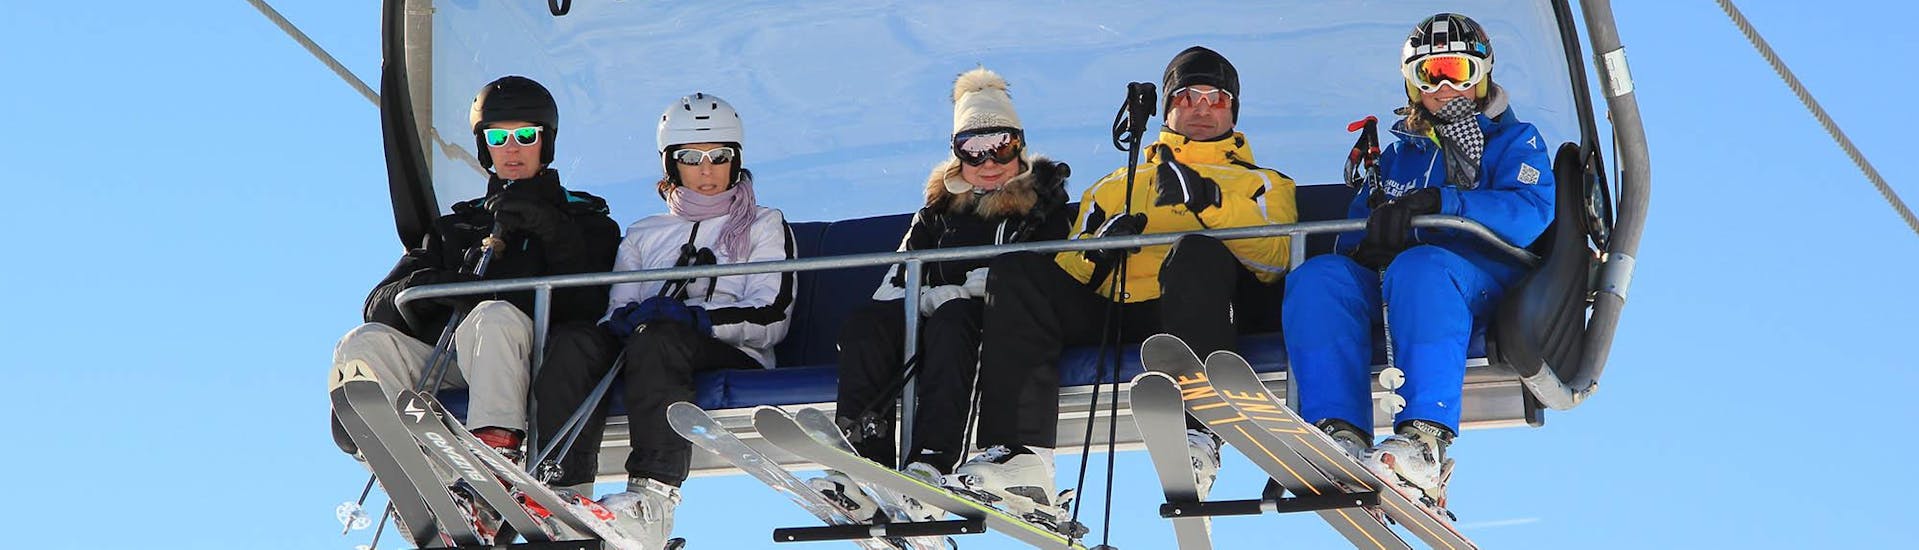 Un gruppo di amici sale sullo skilift durante le lezioni private di sci per adulti di tutti i livelli presso la Skischule Habeler Mayrhofen.